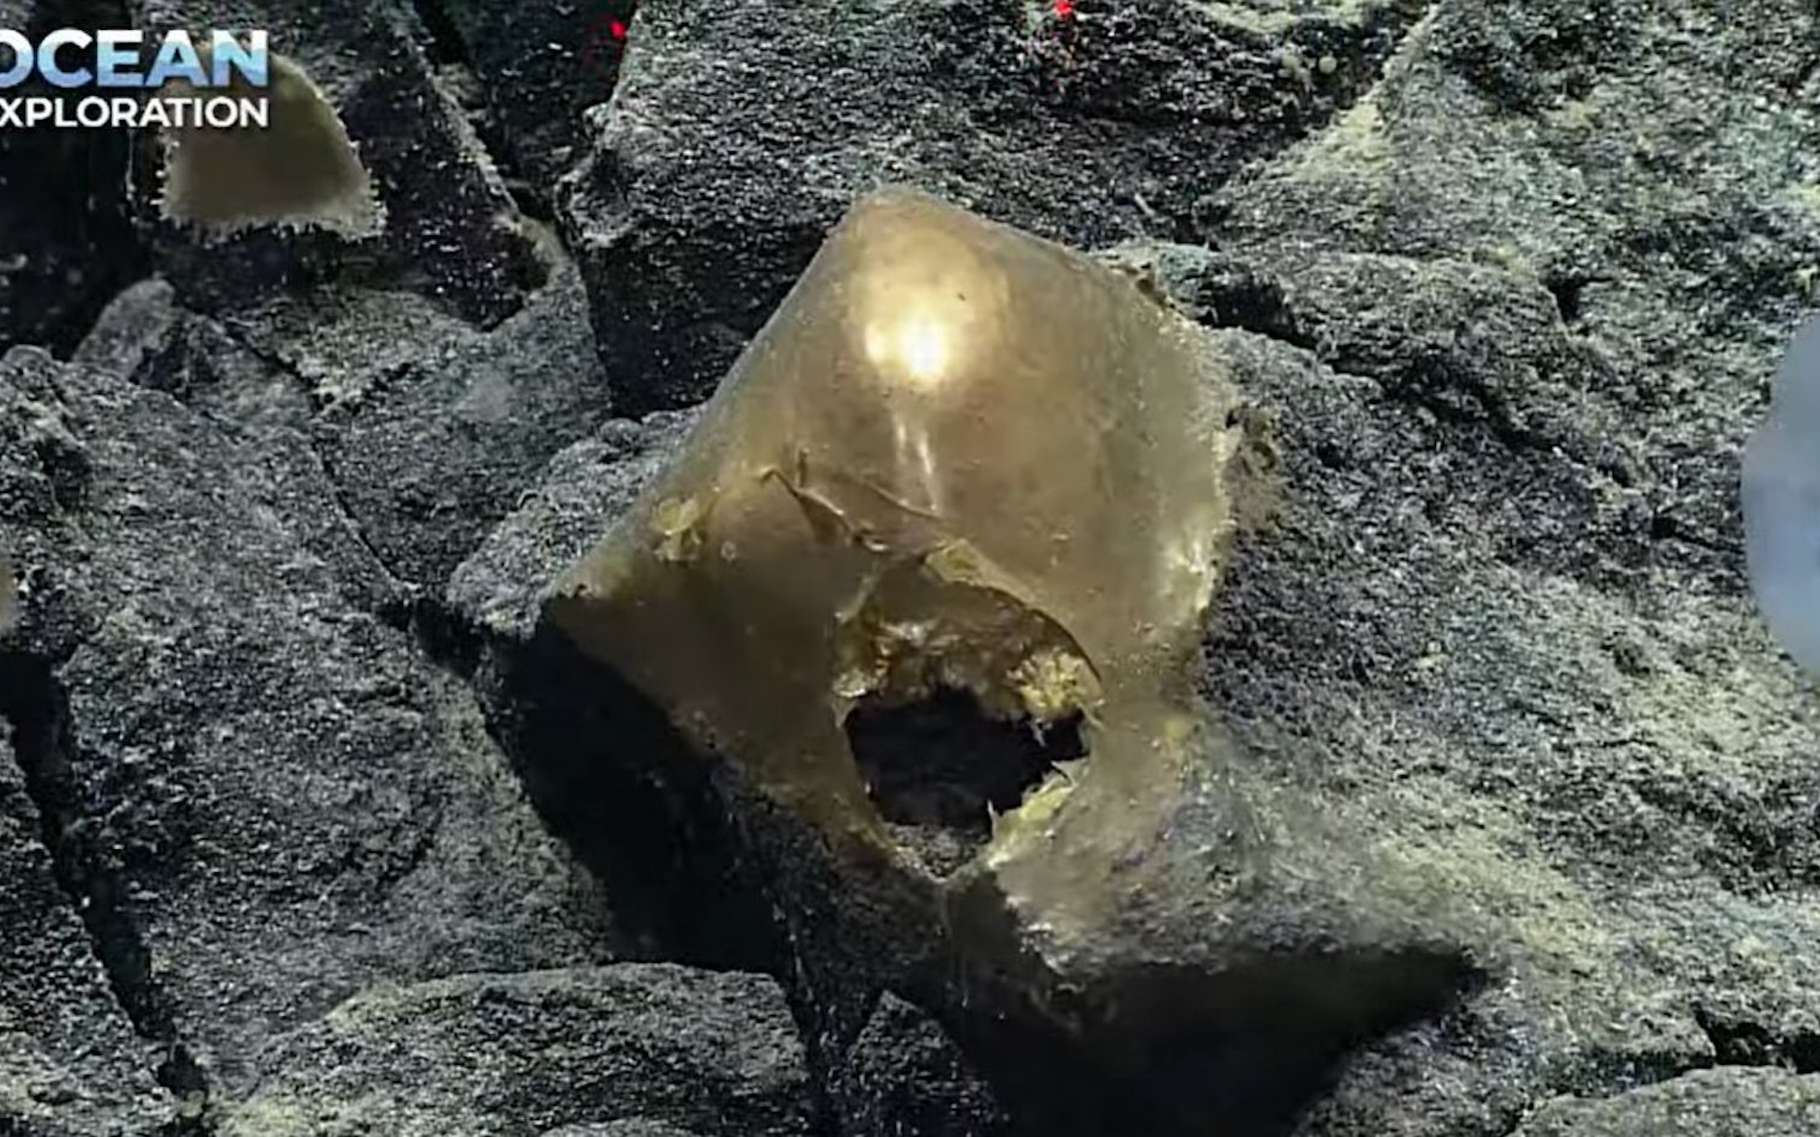 Un étrange objet doré découvert à 3 000 mètres de profondeur dans l'océan